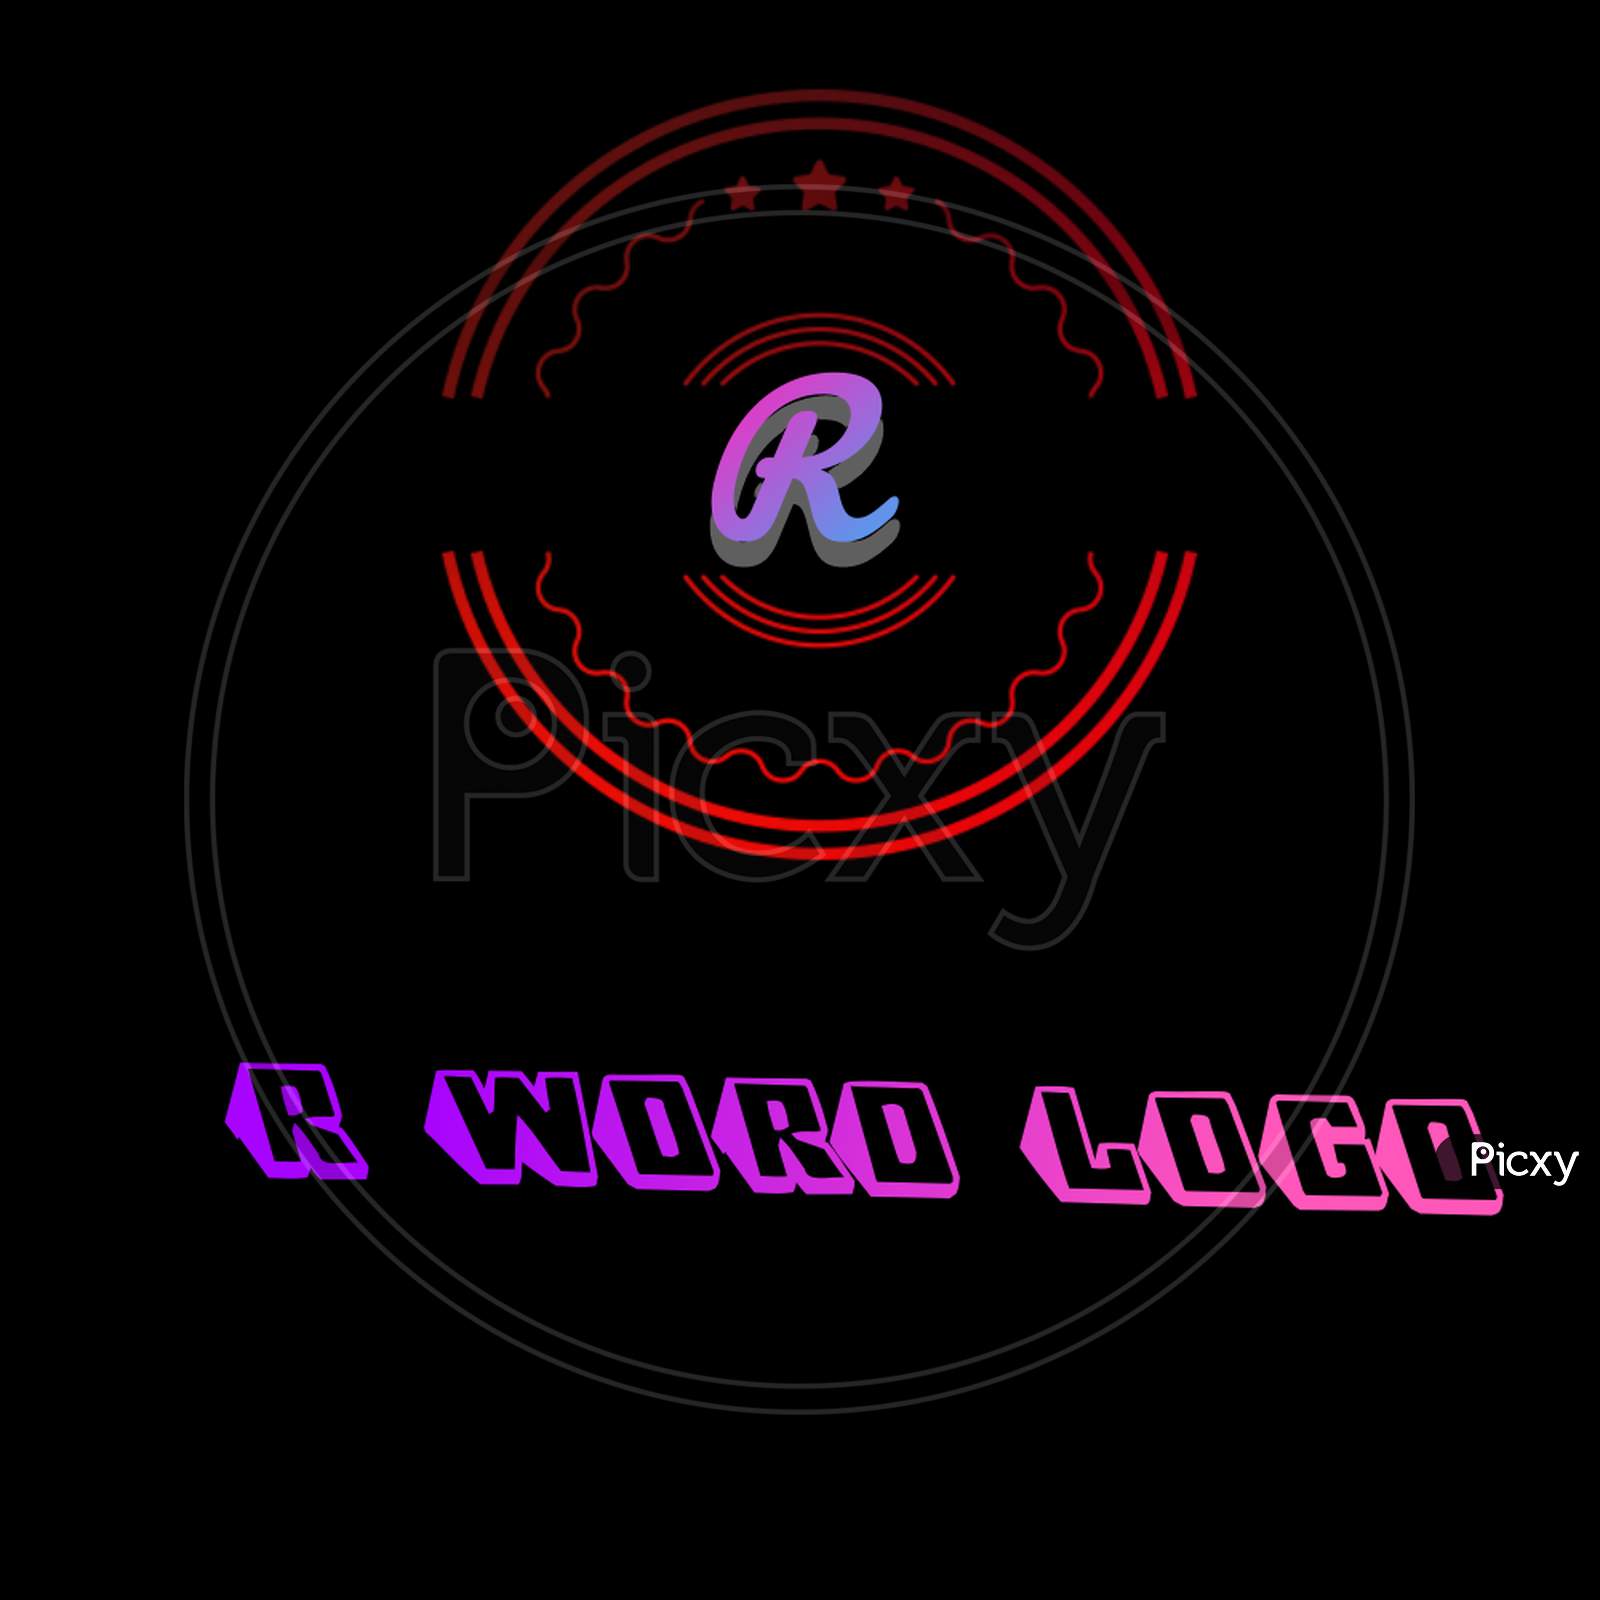 R word logo